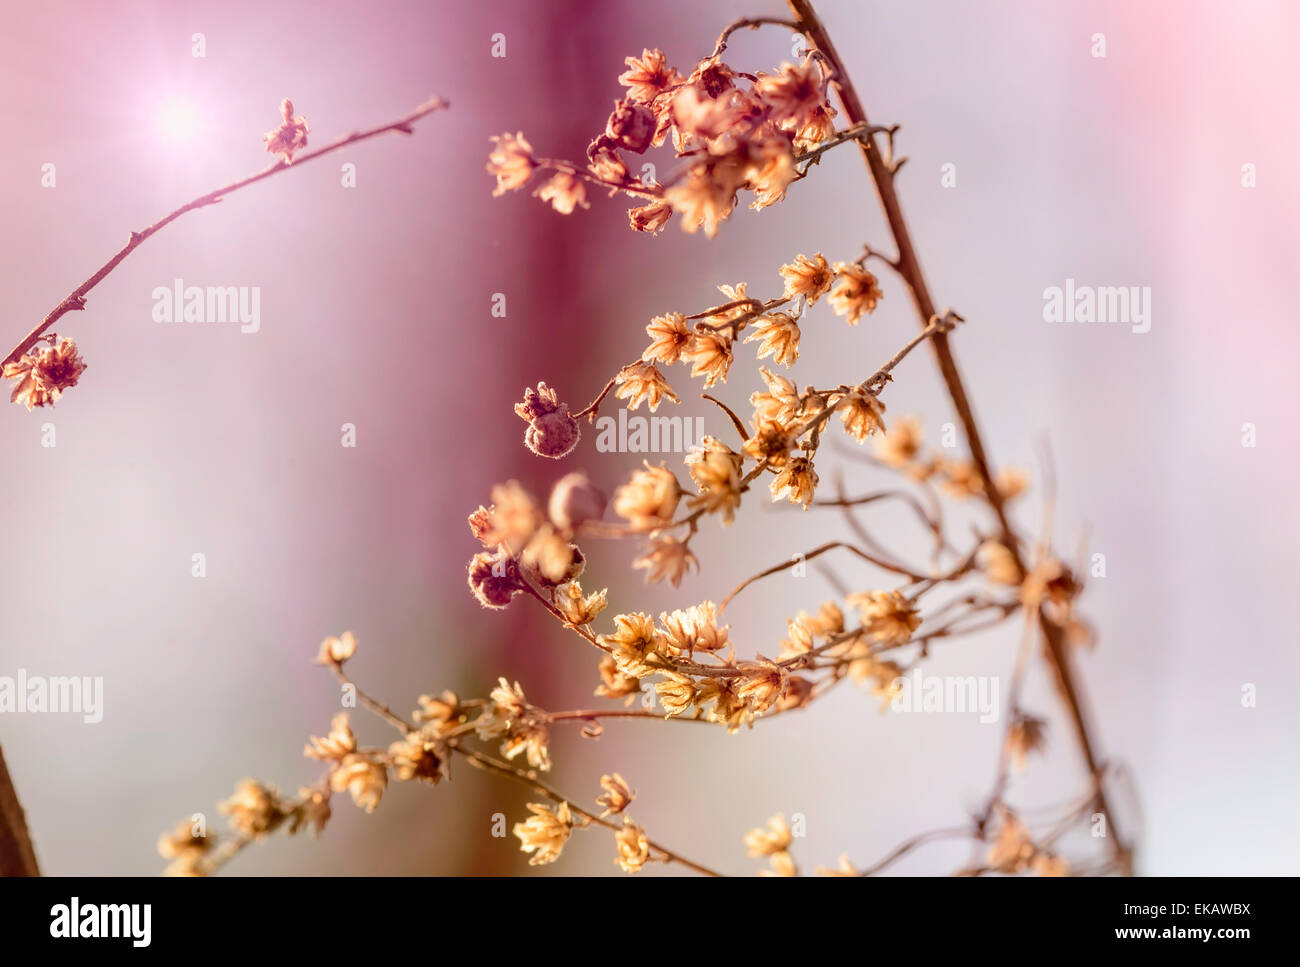 Une branche avec des fleurs sèches à la fin de l'hiver, pourquoi un soleil de printemps tiède dans le fond rose Banque D'Images